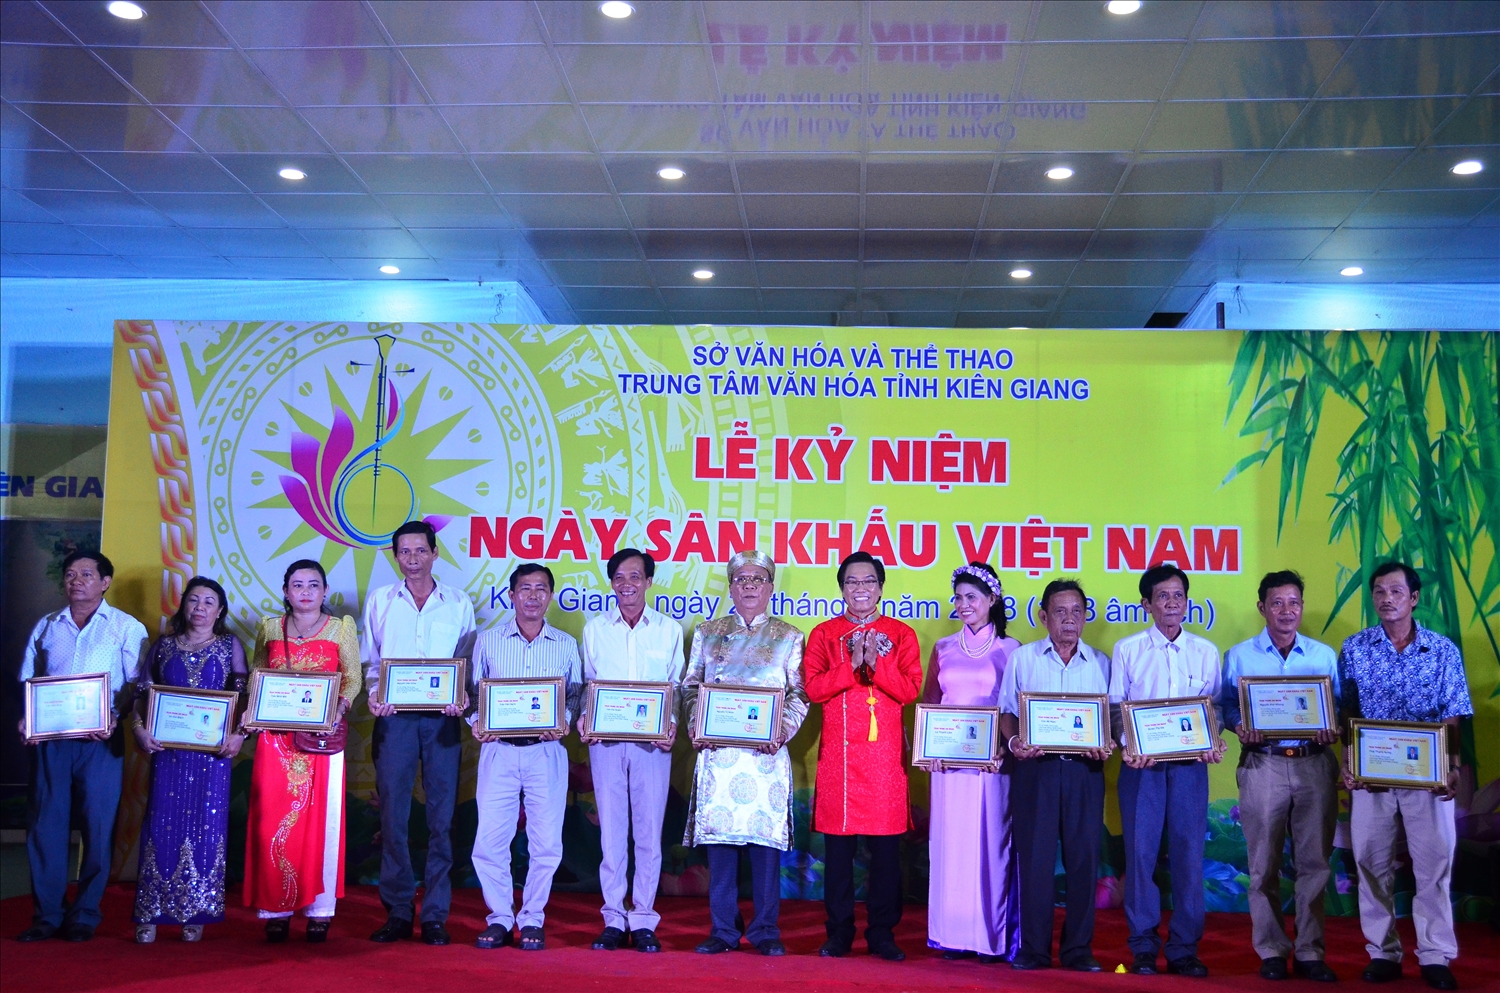 Ông Tô Duy Chiêm, Giám đốc Trung tâm Văn hóa tỉnh (áo đỏ) trao giấy chứng nhân cho các cá nhân có nhiều đóng góp cho phong trào đờn ca tài tử của tỉnh Kiên Giang.